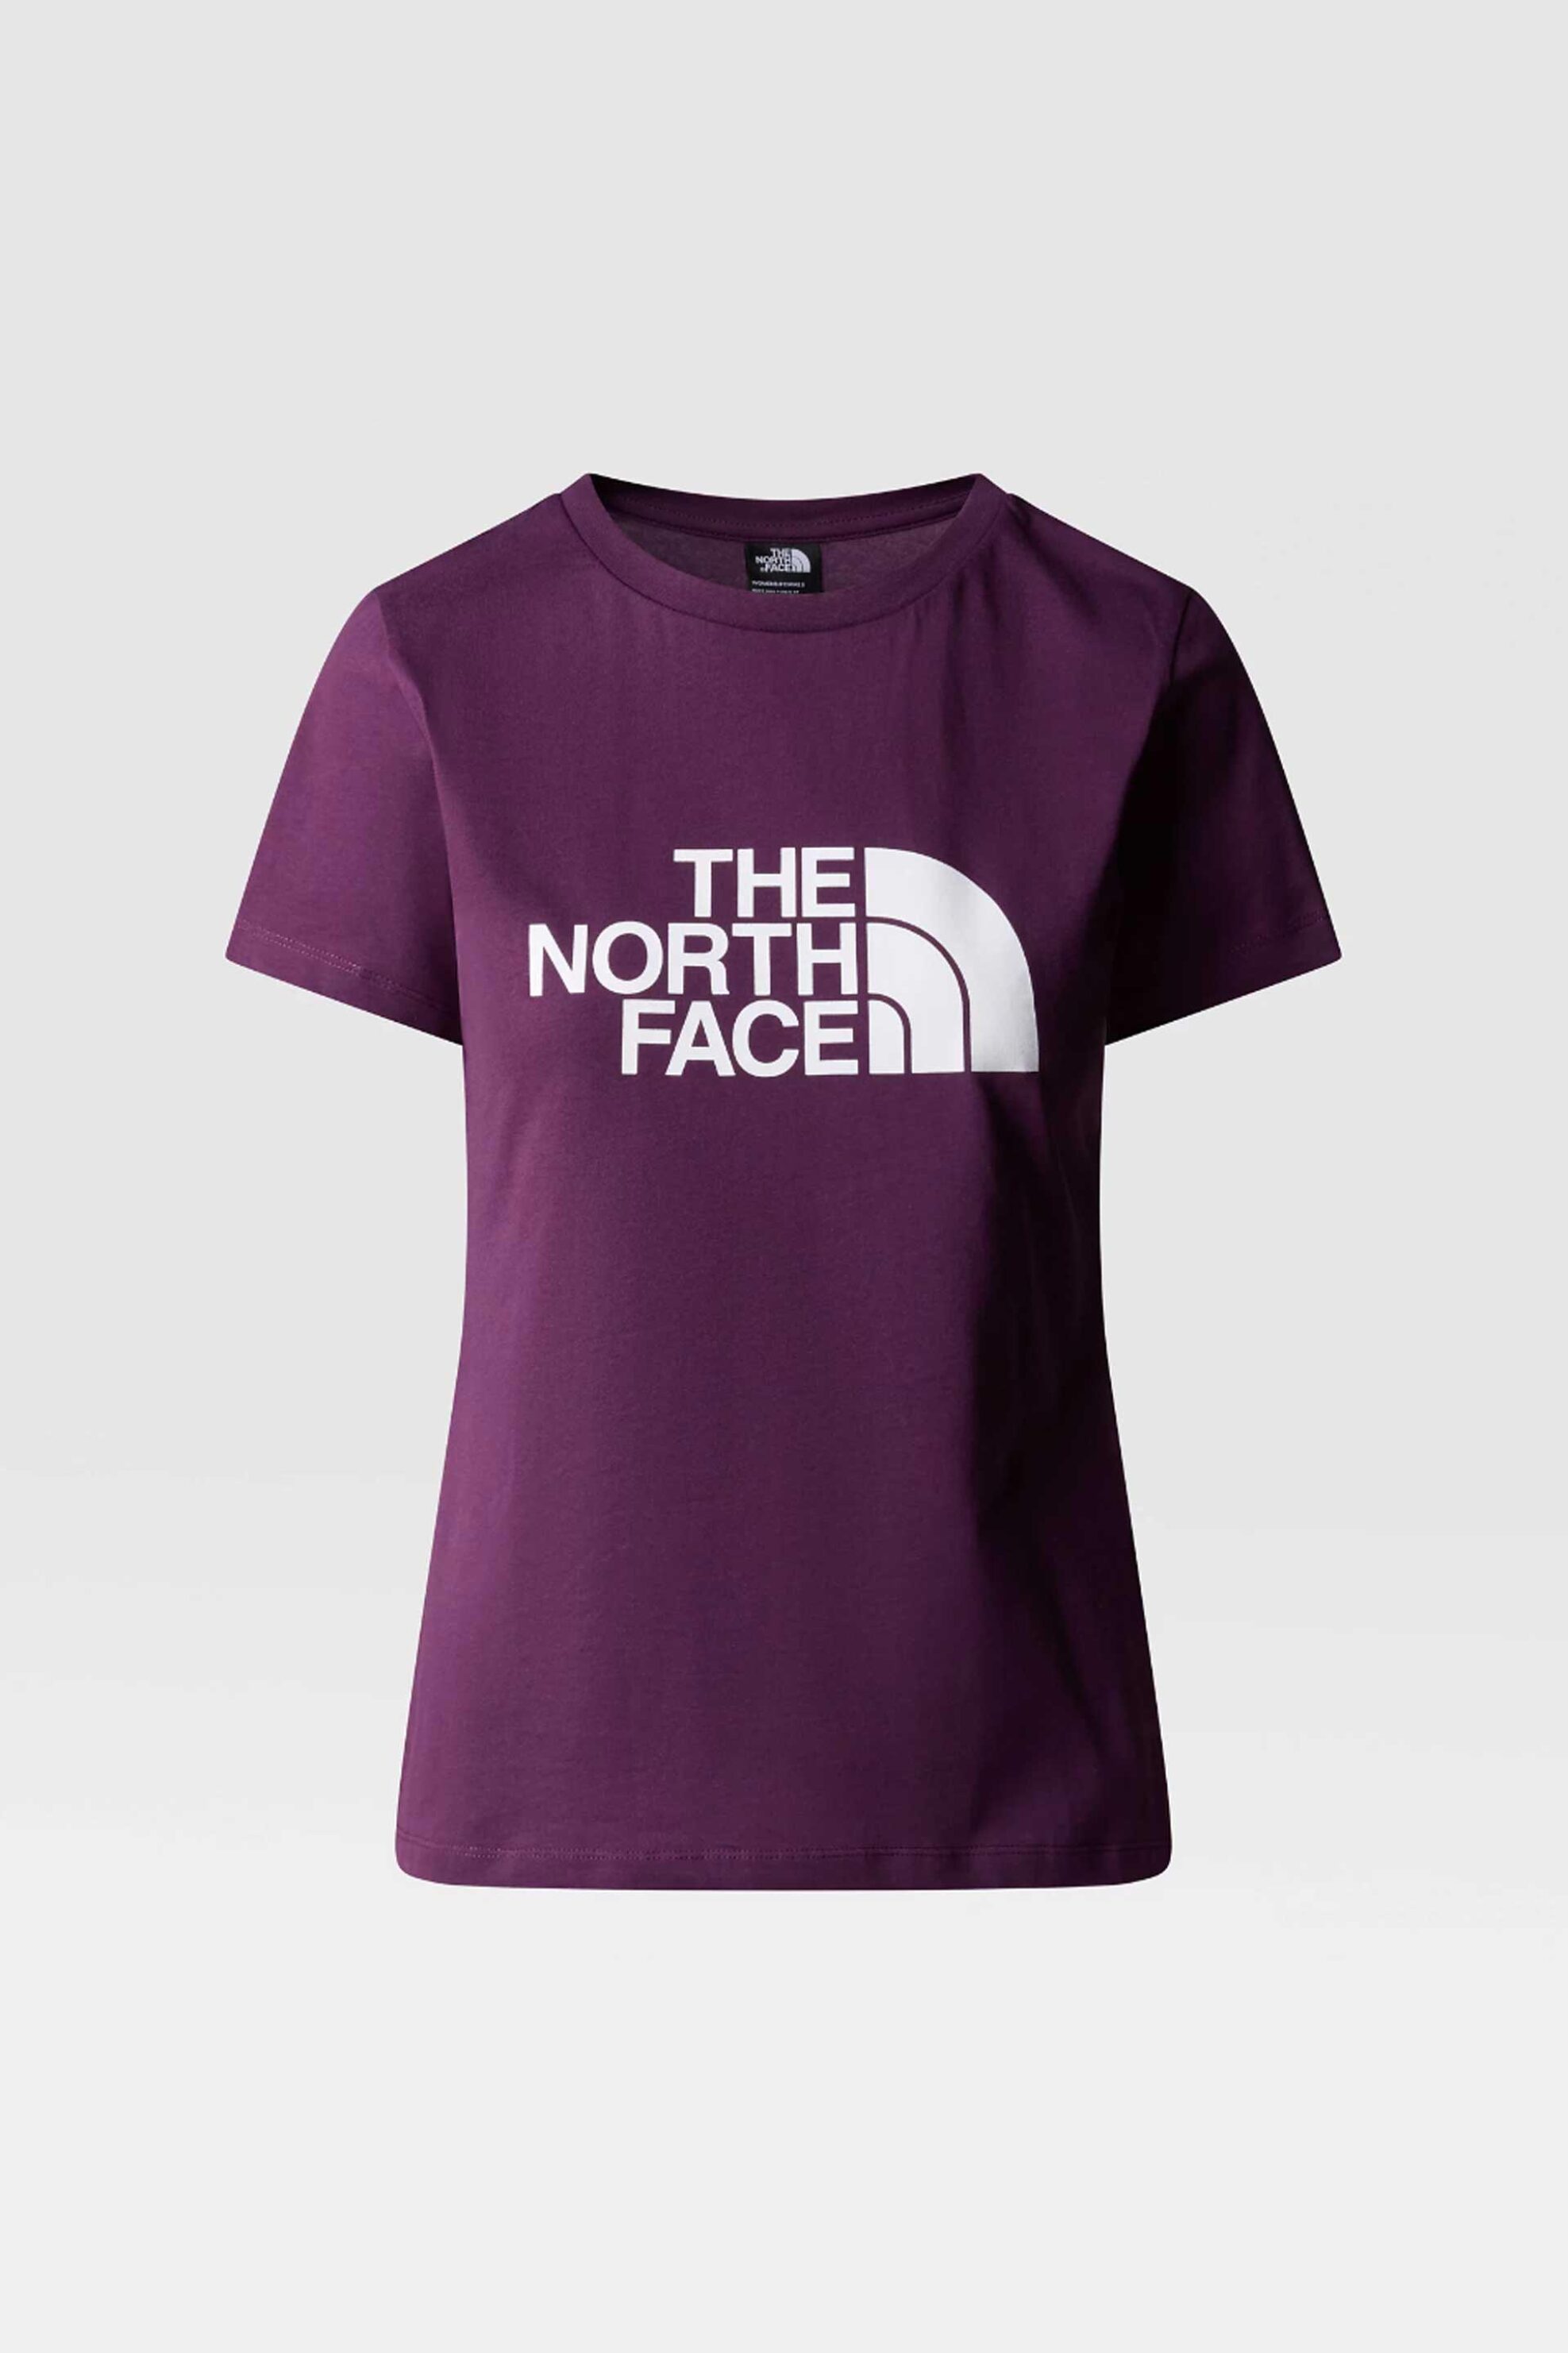 Γυναικεία Ρούχα & Αξεσουάρ > Γυναικεία Ρούχα > Γυναικεία Τοπ > Γυναικεία T-Shirts The North Face γυναικείο T-shirt βαμβακερό μονόχρωμο με contrast logo prints "Easy" - NF0A87N6V6V1 Μοβ Σκούρο